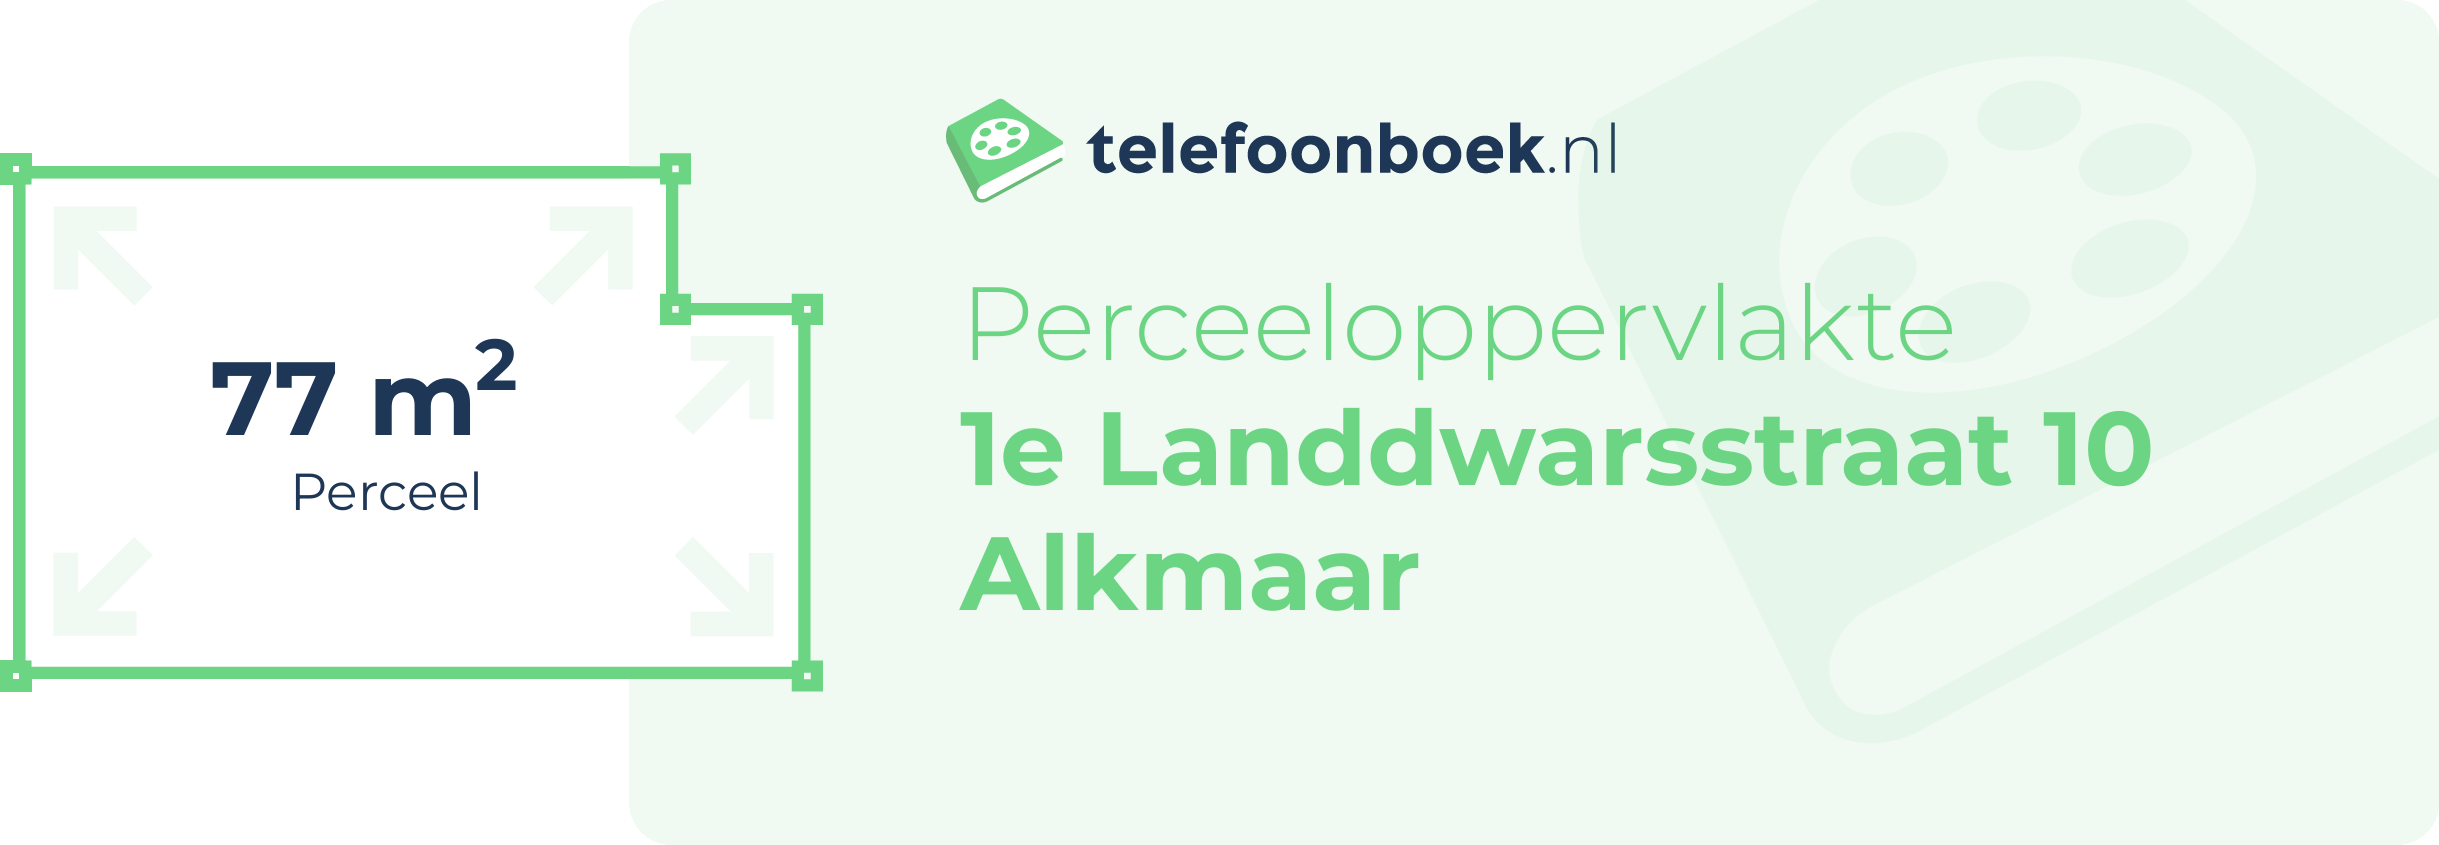 Perceeloppervlakte 1e Landdwarsstraat 10 Alkmaar